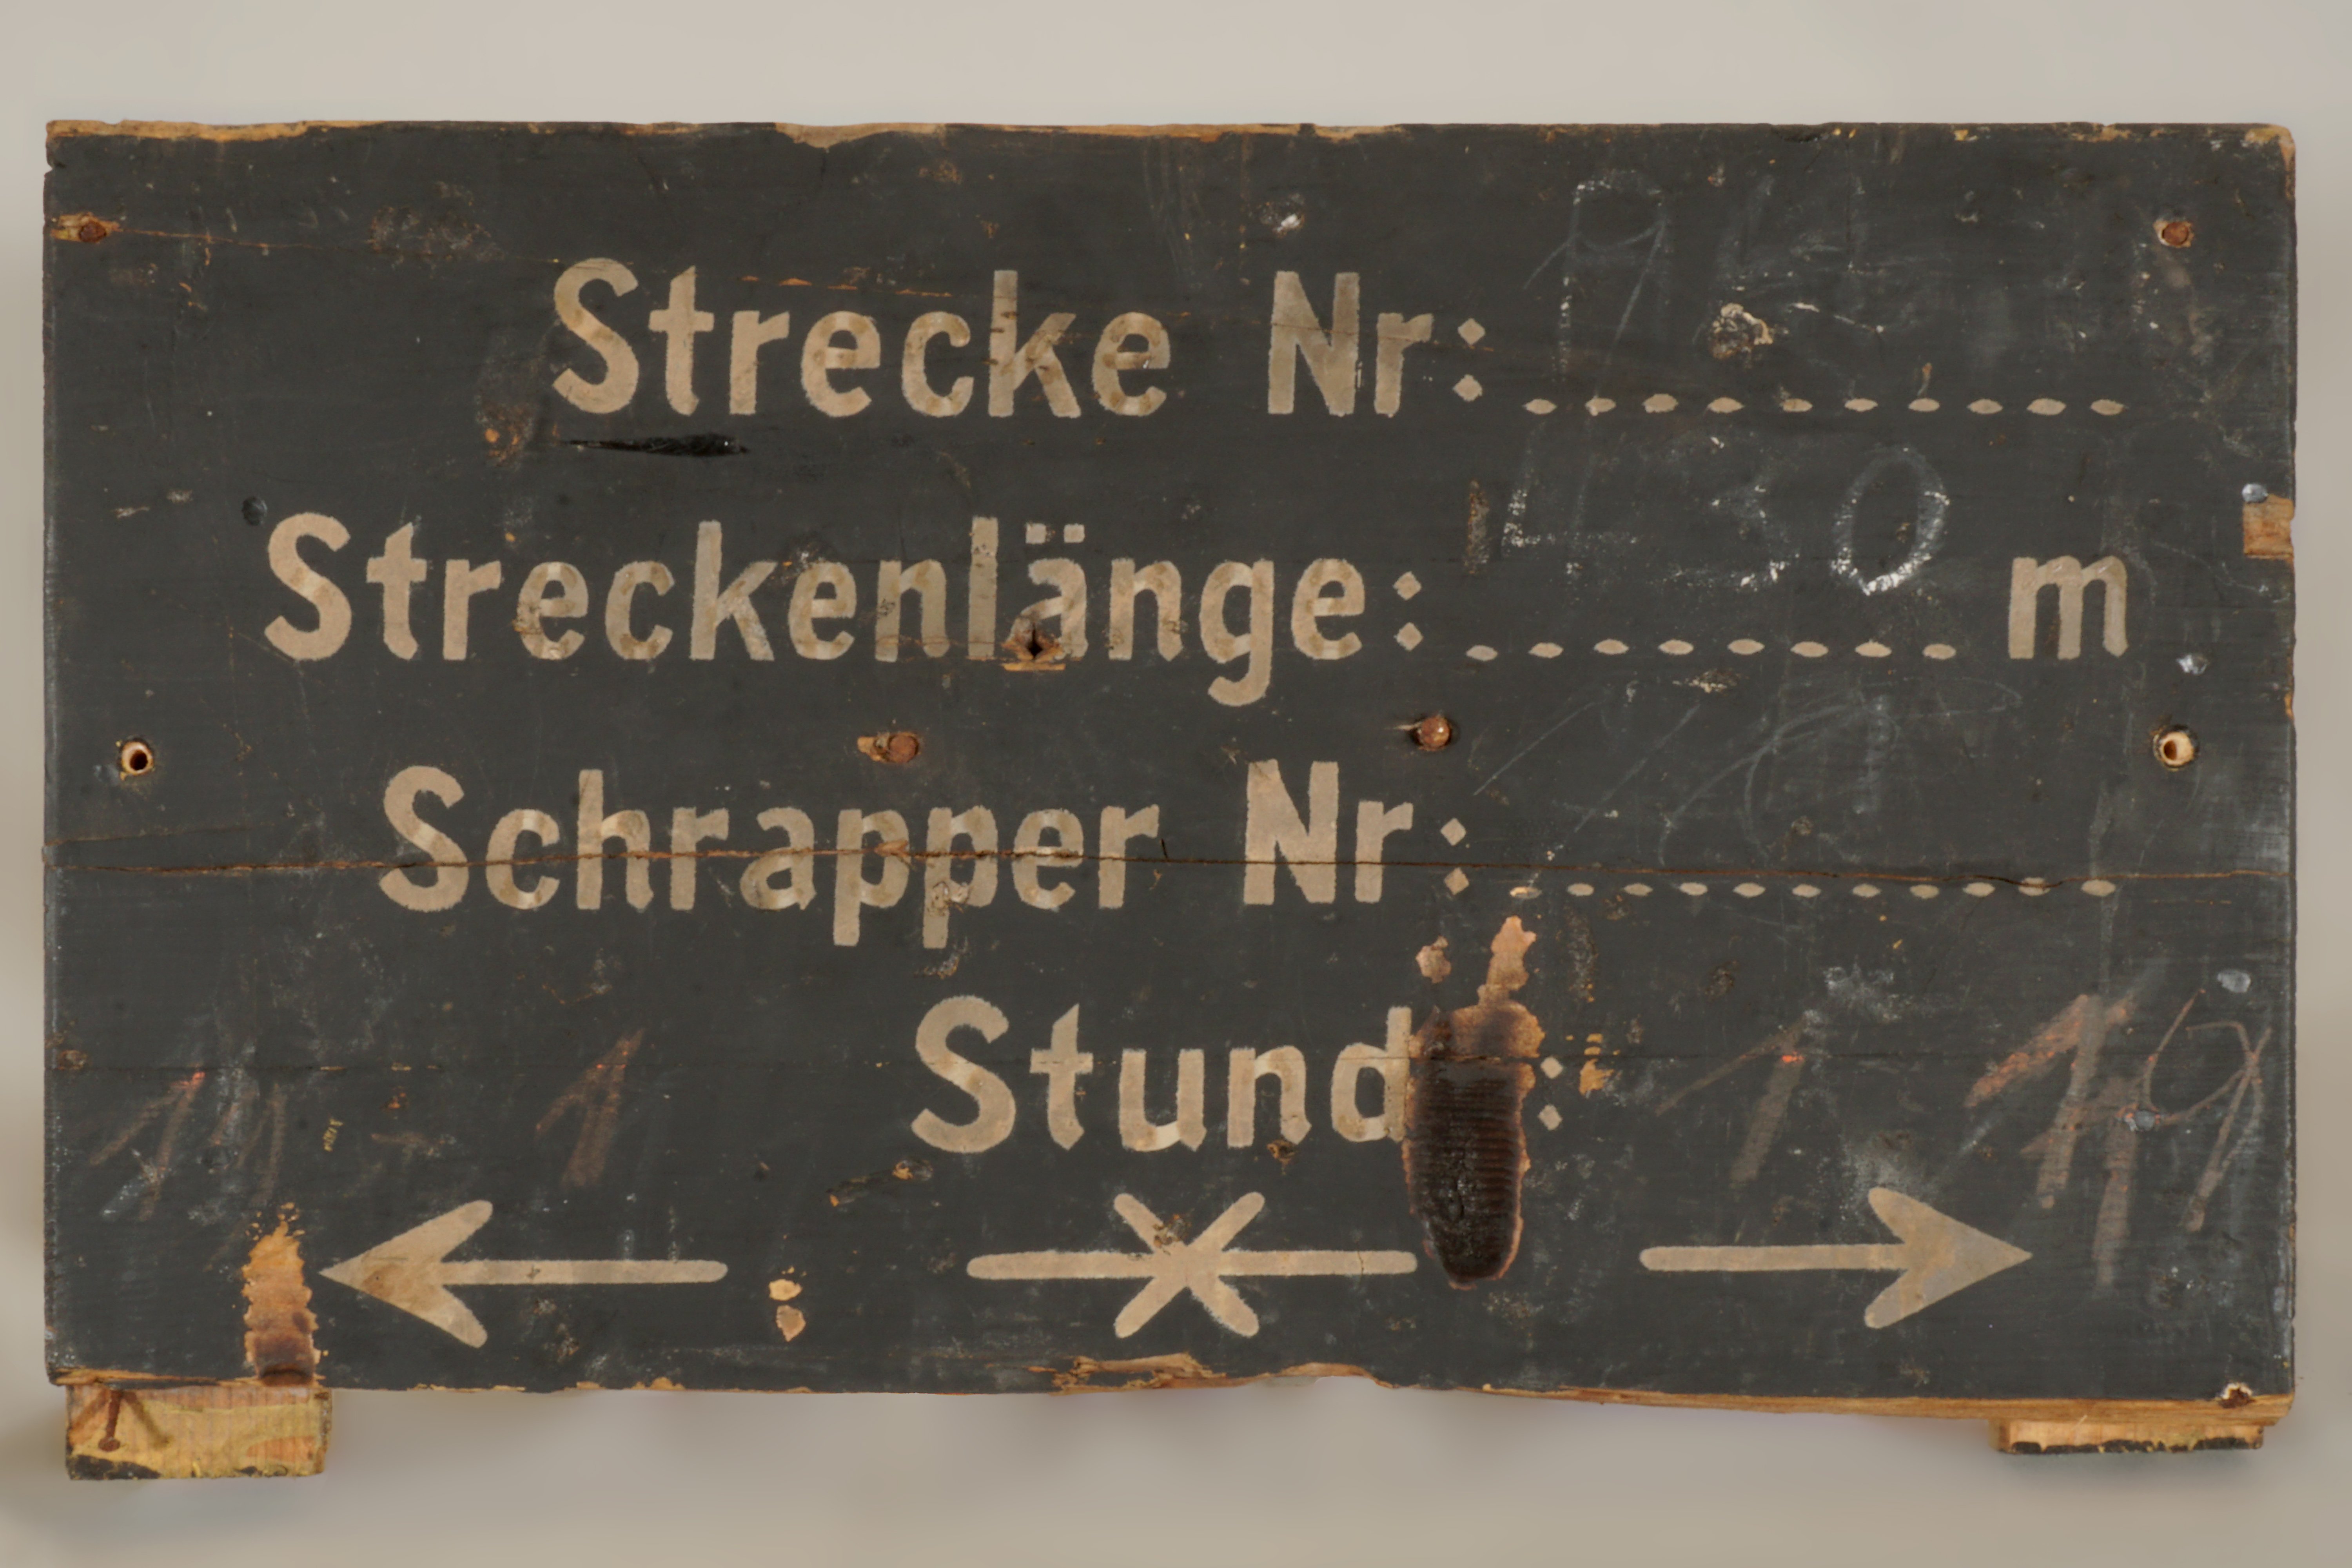 Hinweistafel zu Streckennummer, -länge, Schrappernummer und Stunde (Werra-Kalibergbau-Museum, Heringen/W. CC BY-NC-SA)